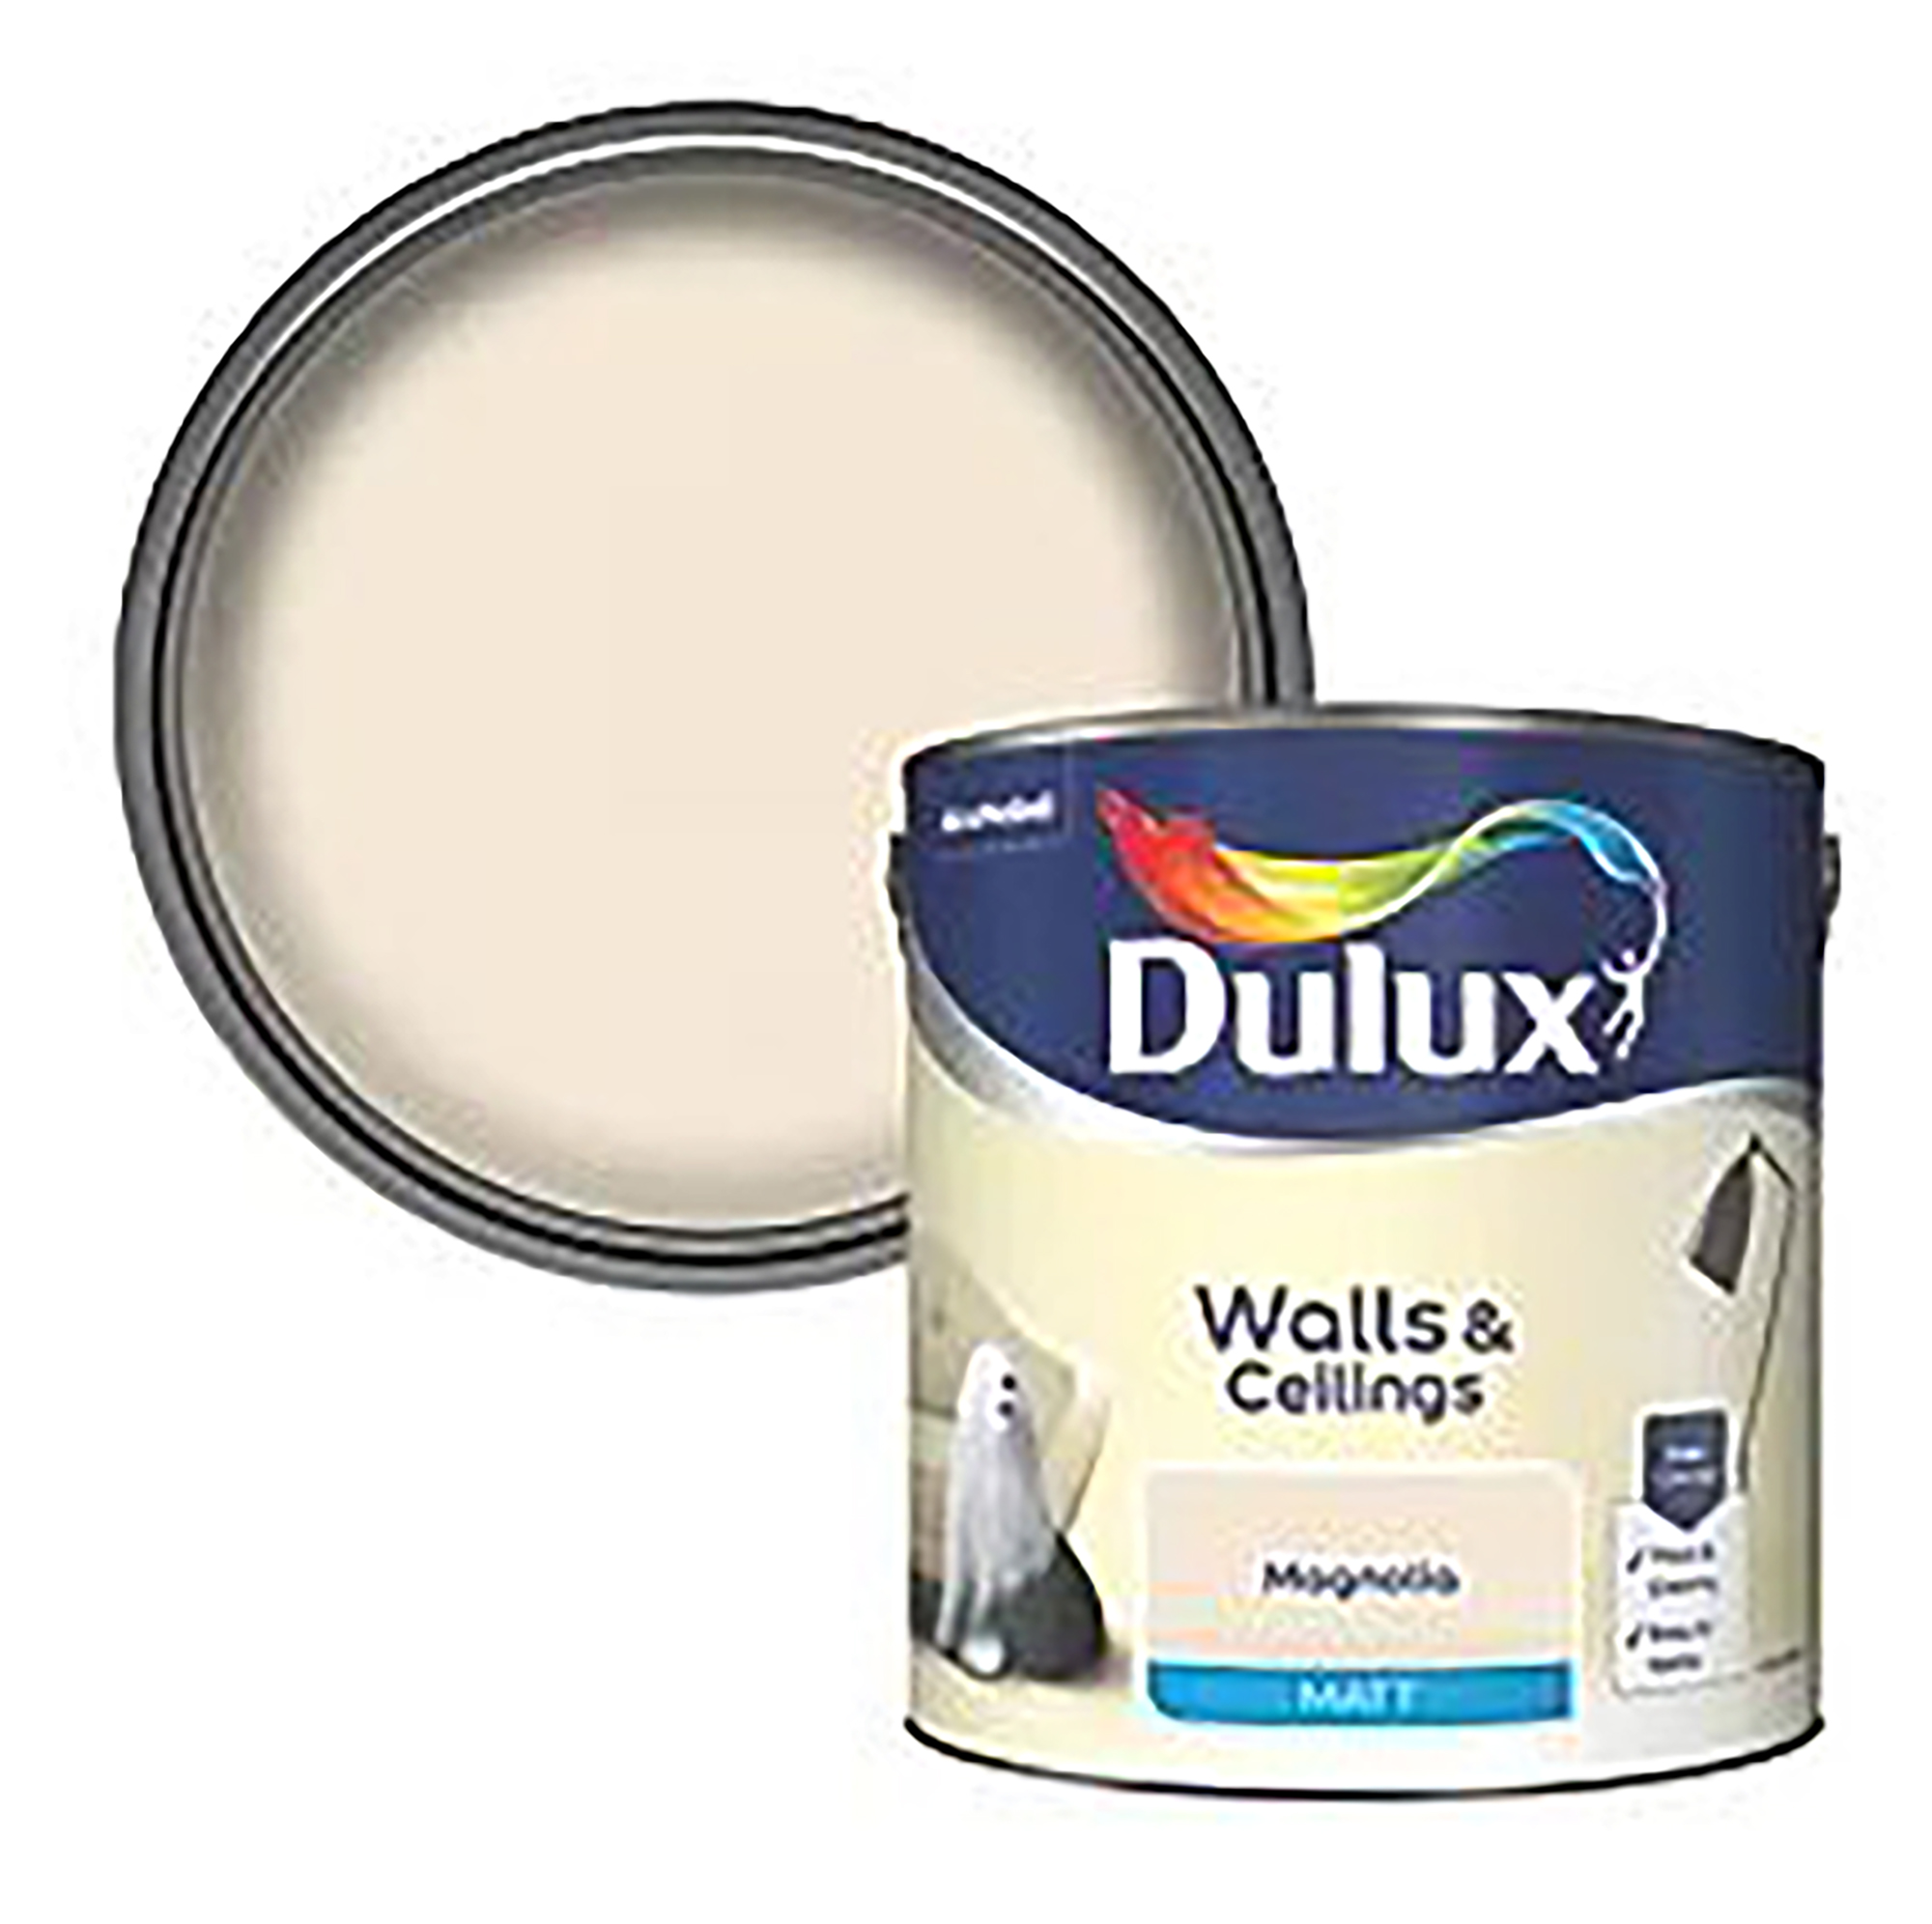 Dulux magnolia paint can